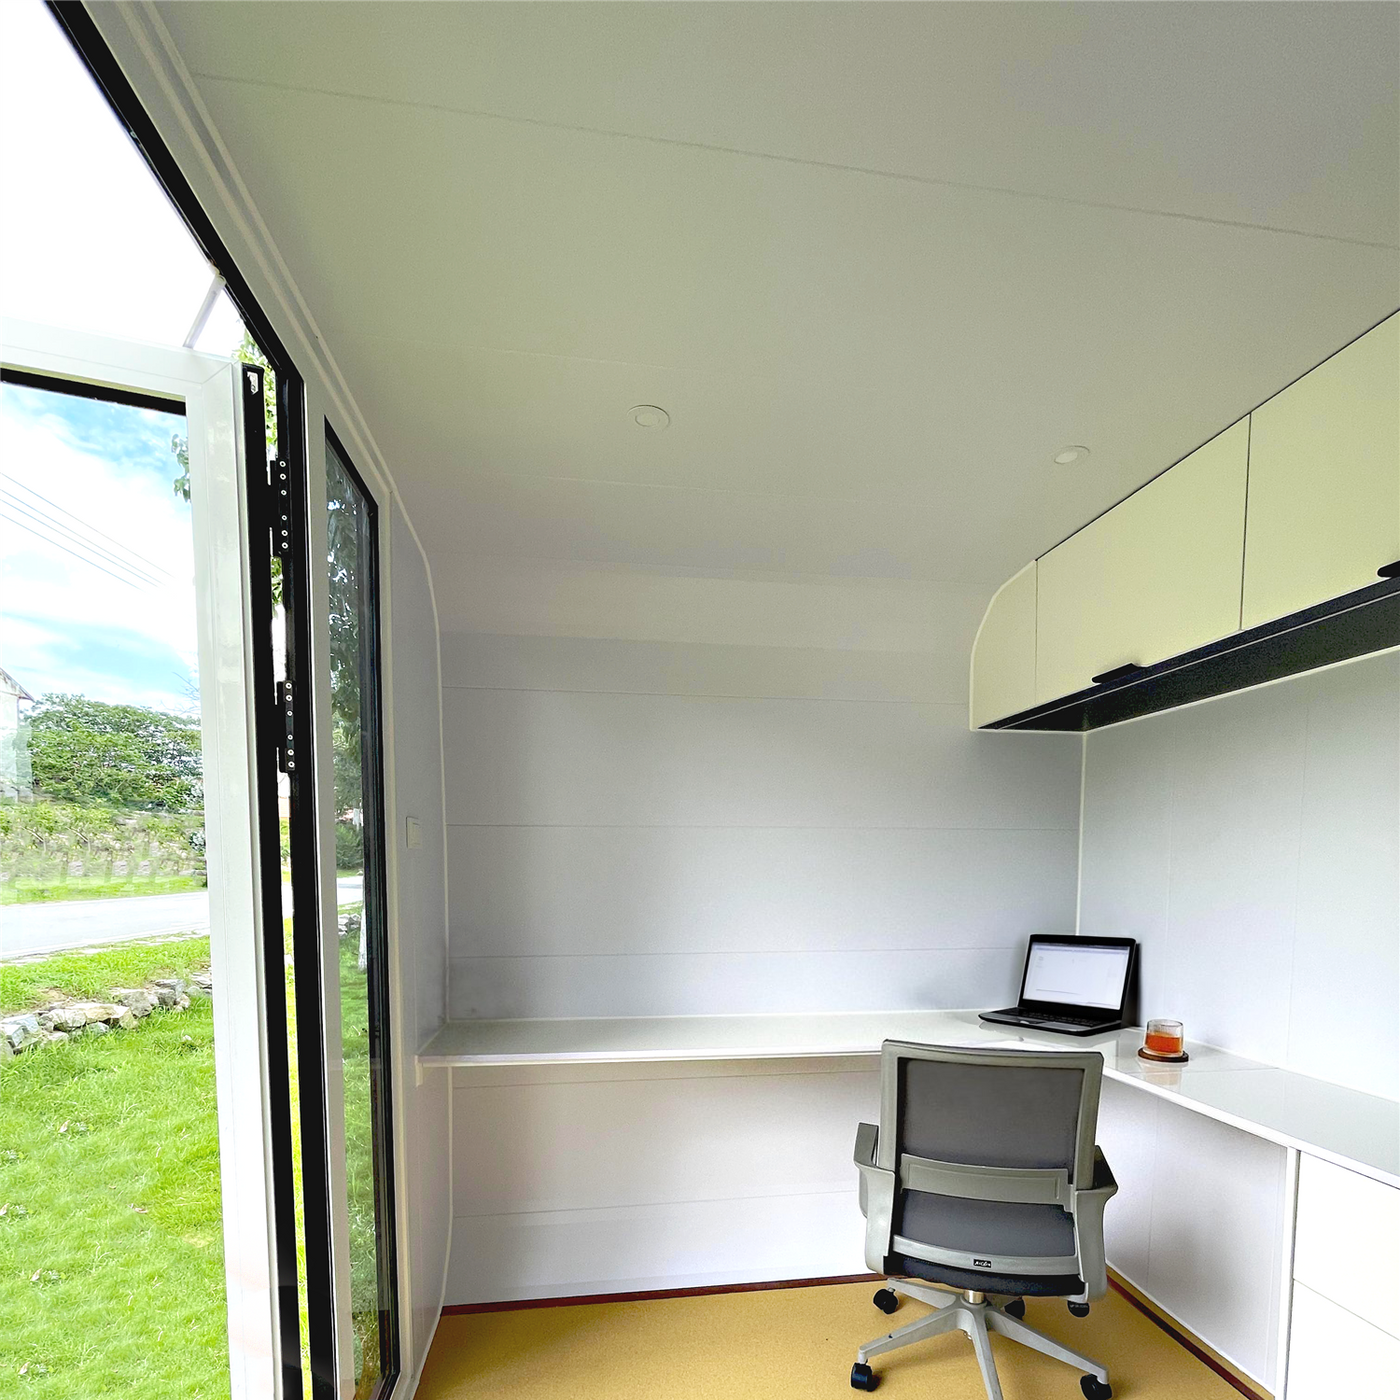 Spacee Lite 3m - Office